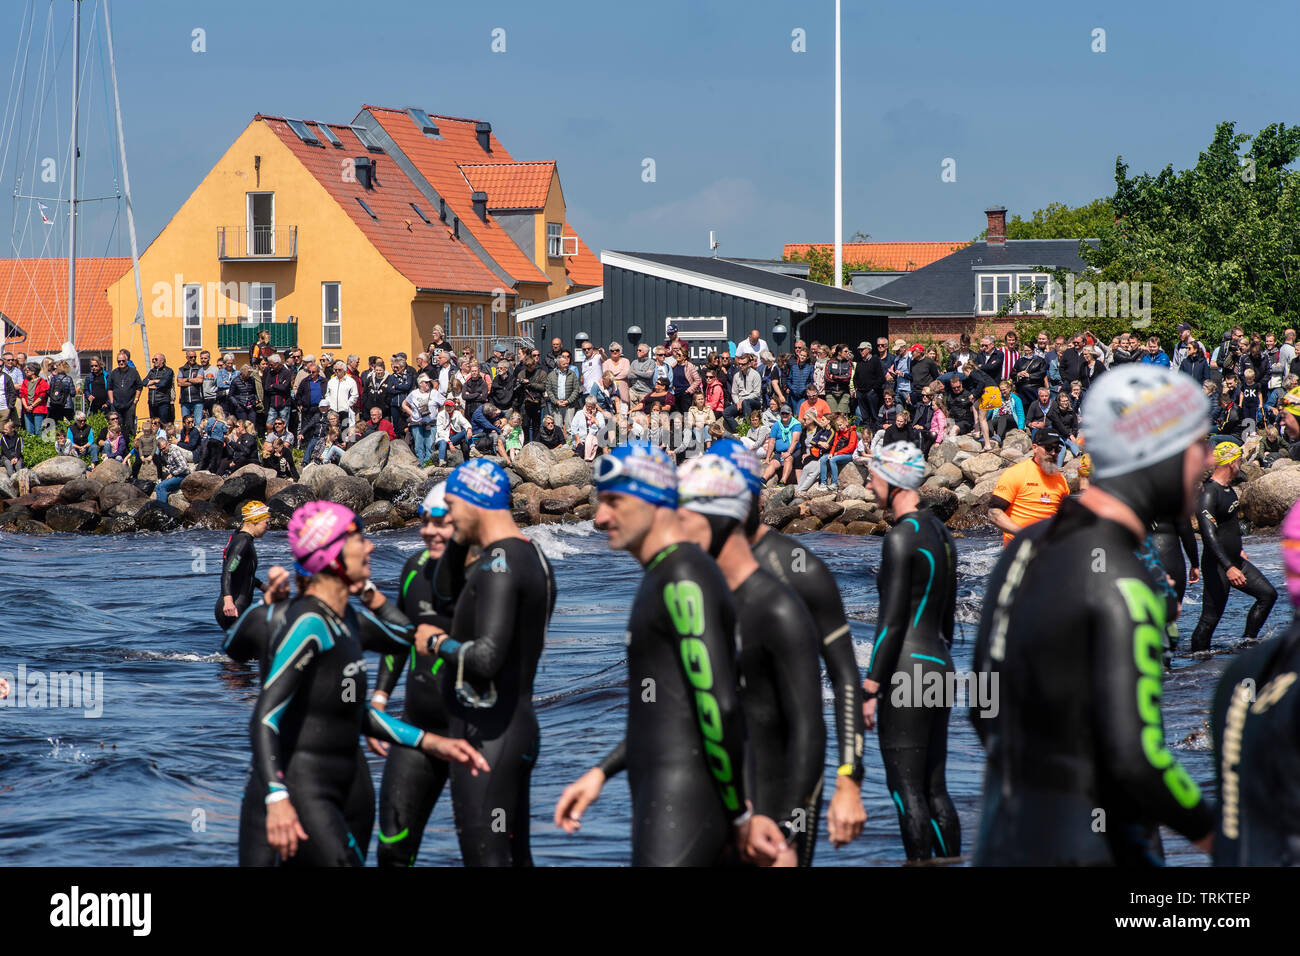 De grands groupes d'aspirants triathlon en attente d'exécution dans la mer pendant la Triathlon de Vordingborg au Danemark. Les participants portent des combinaisons Banque D'Images